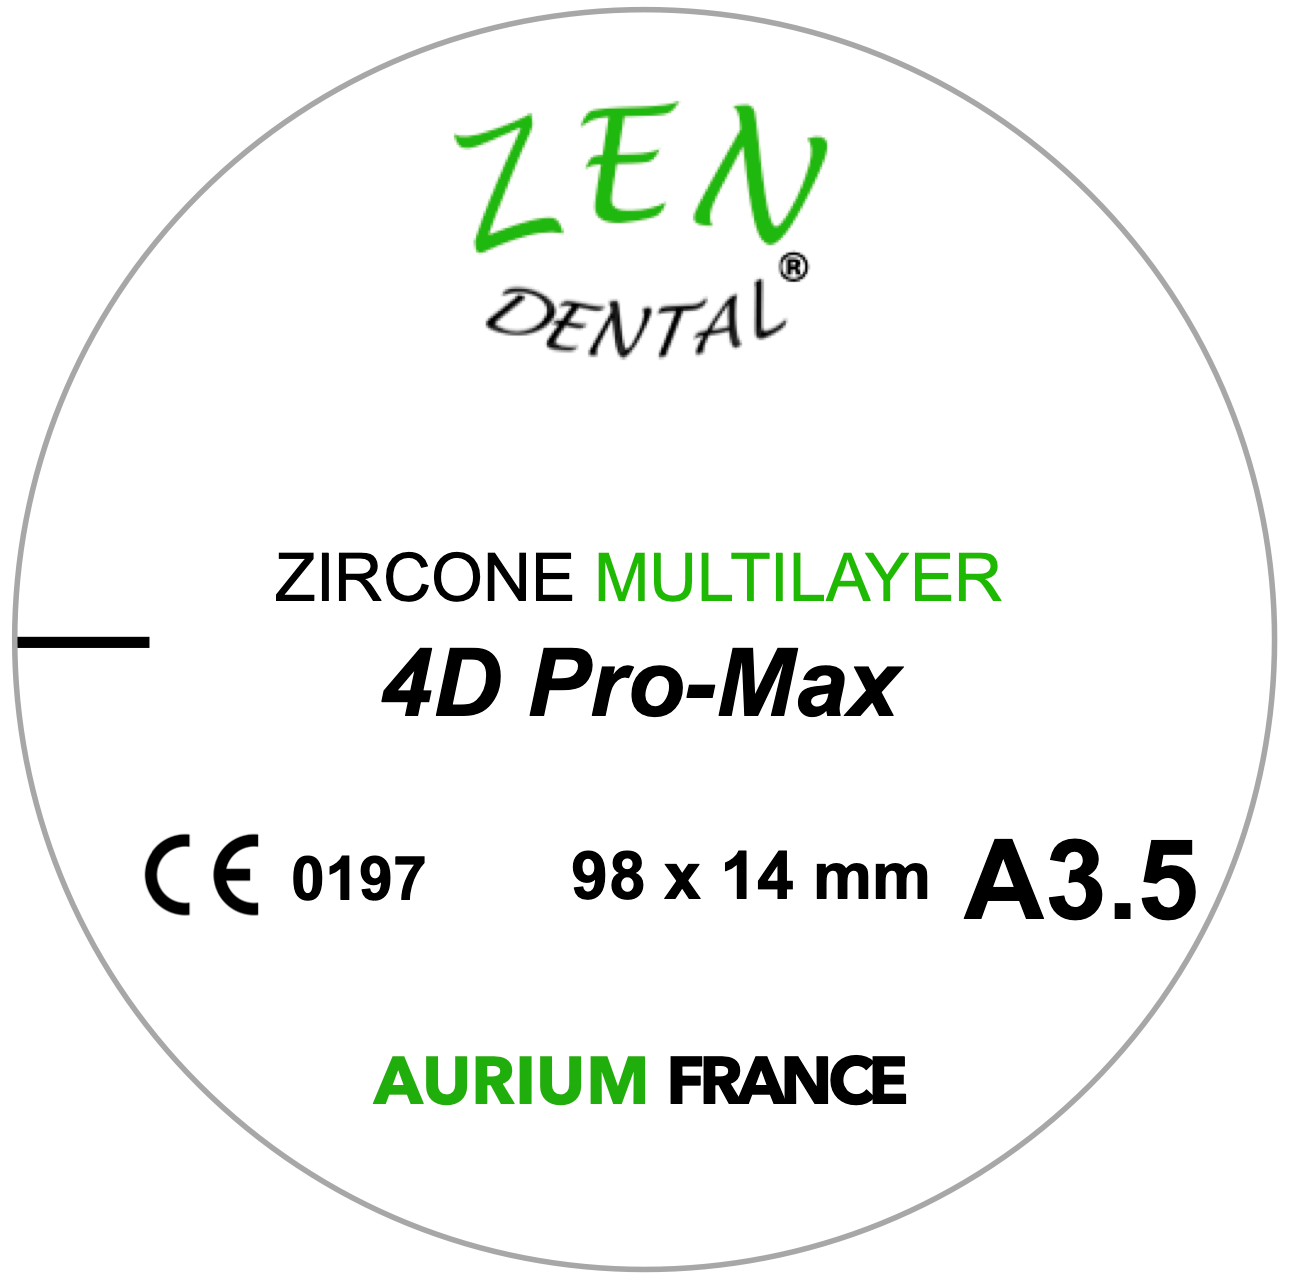 Zircone Multilayer 4D Pro-Max ZEN DENTAL